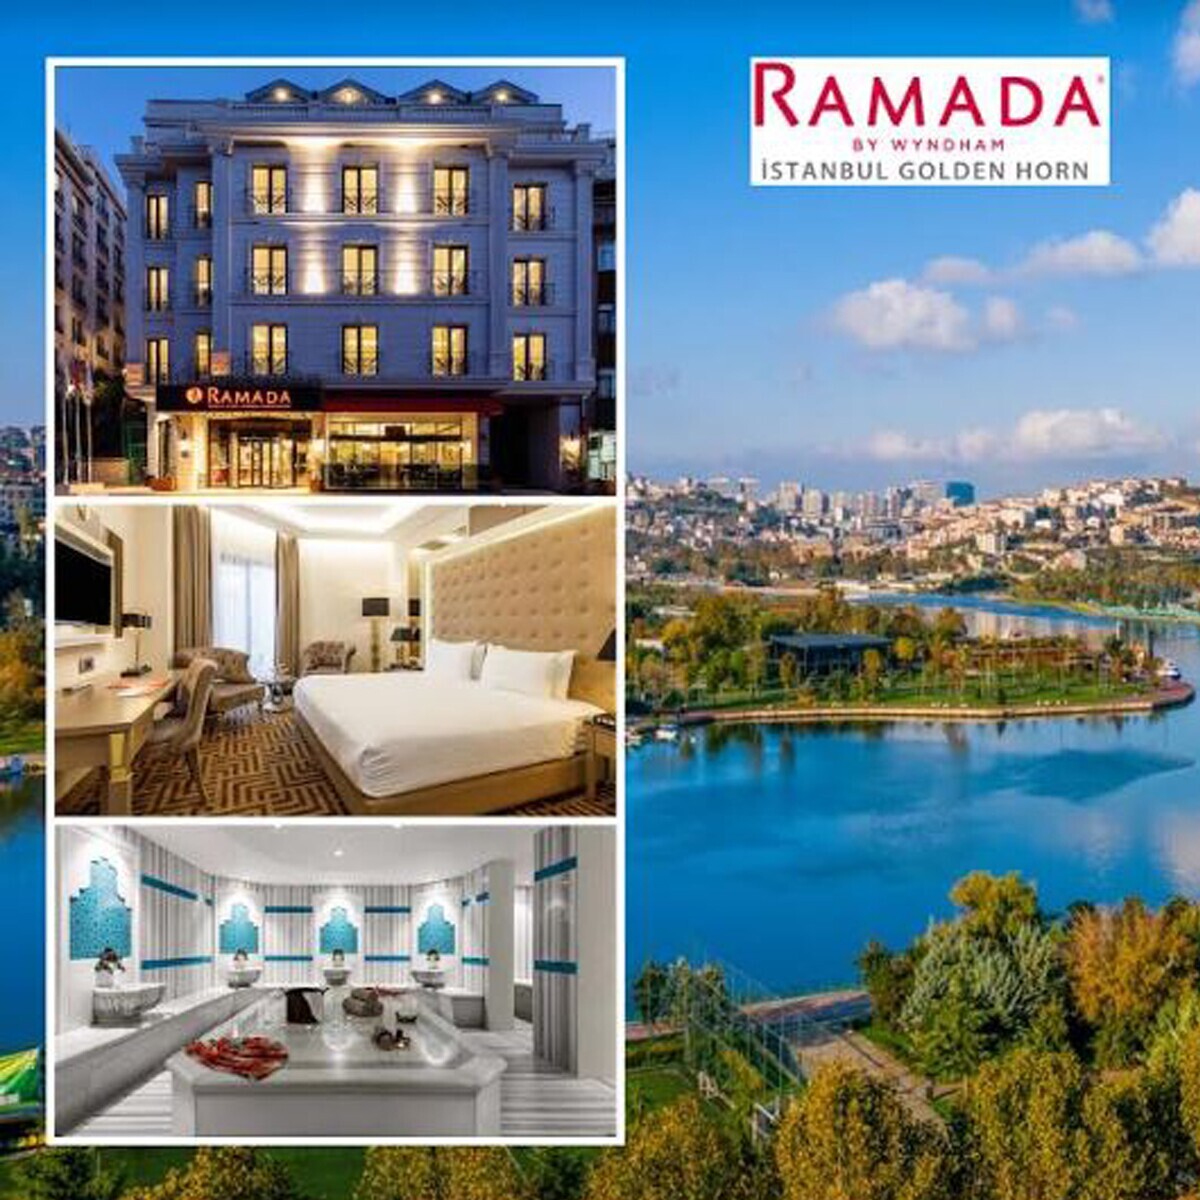 Ramada by Wyndham Istanbul Golden Horn Hotel’de 2 Kişilik Konaklama